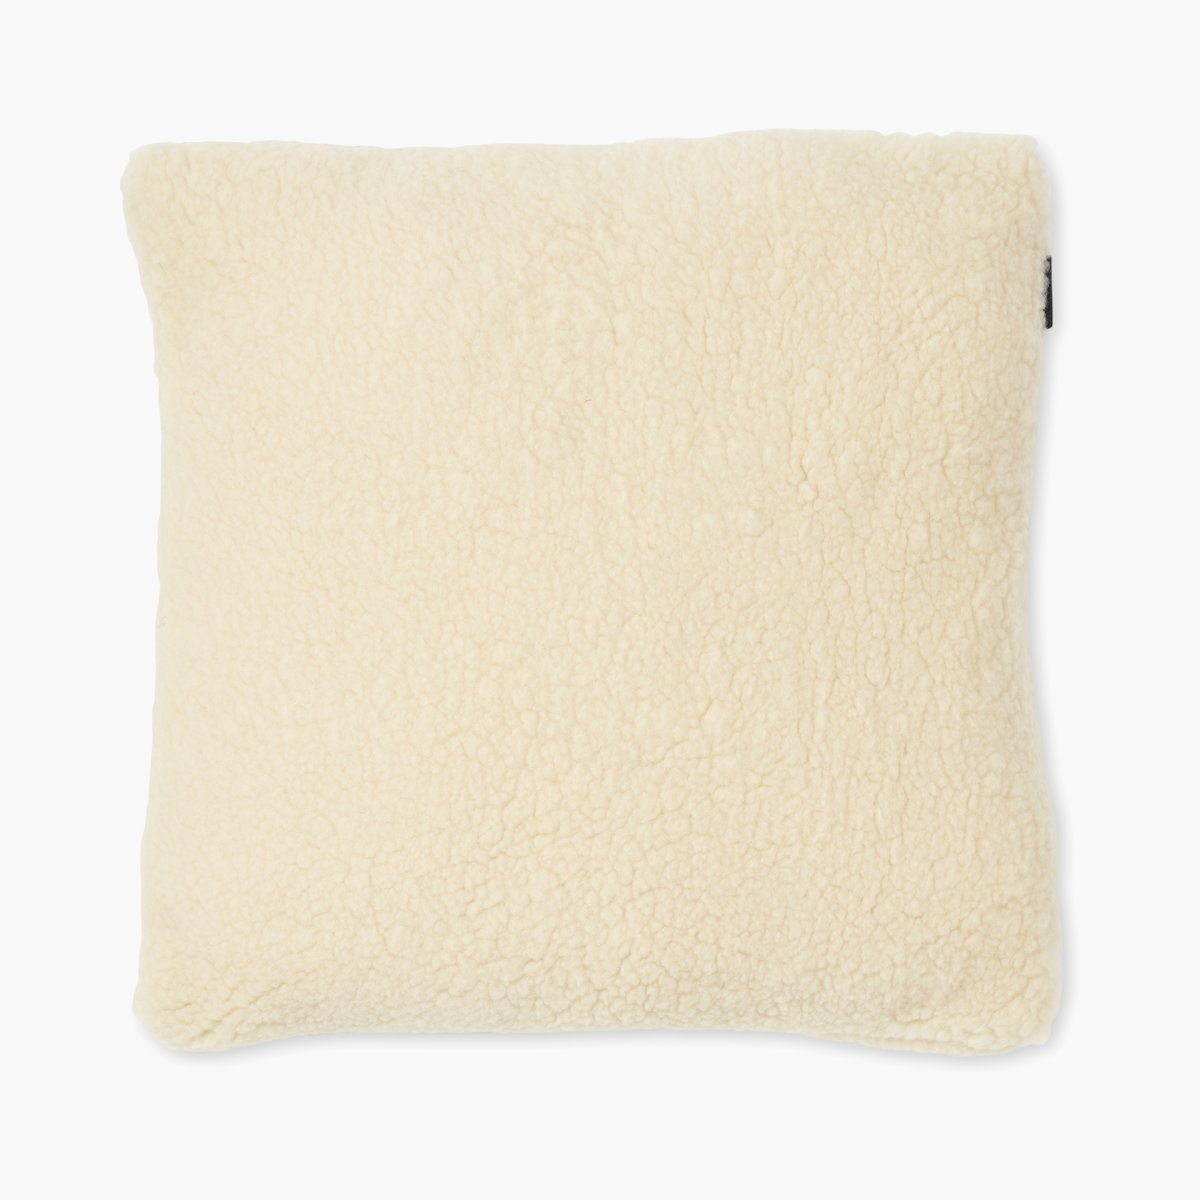 Pasture Pillow